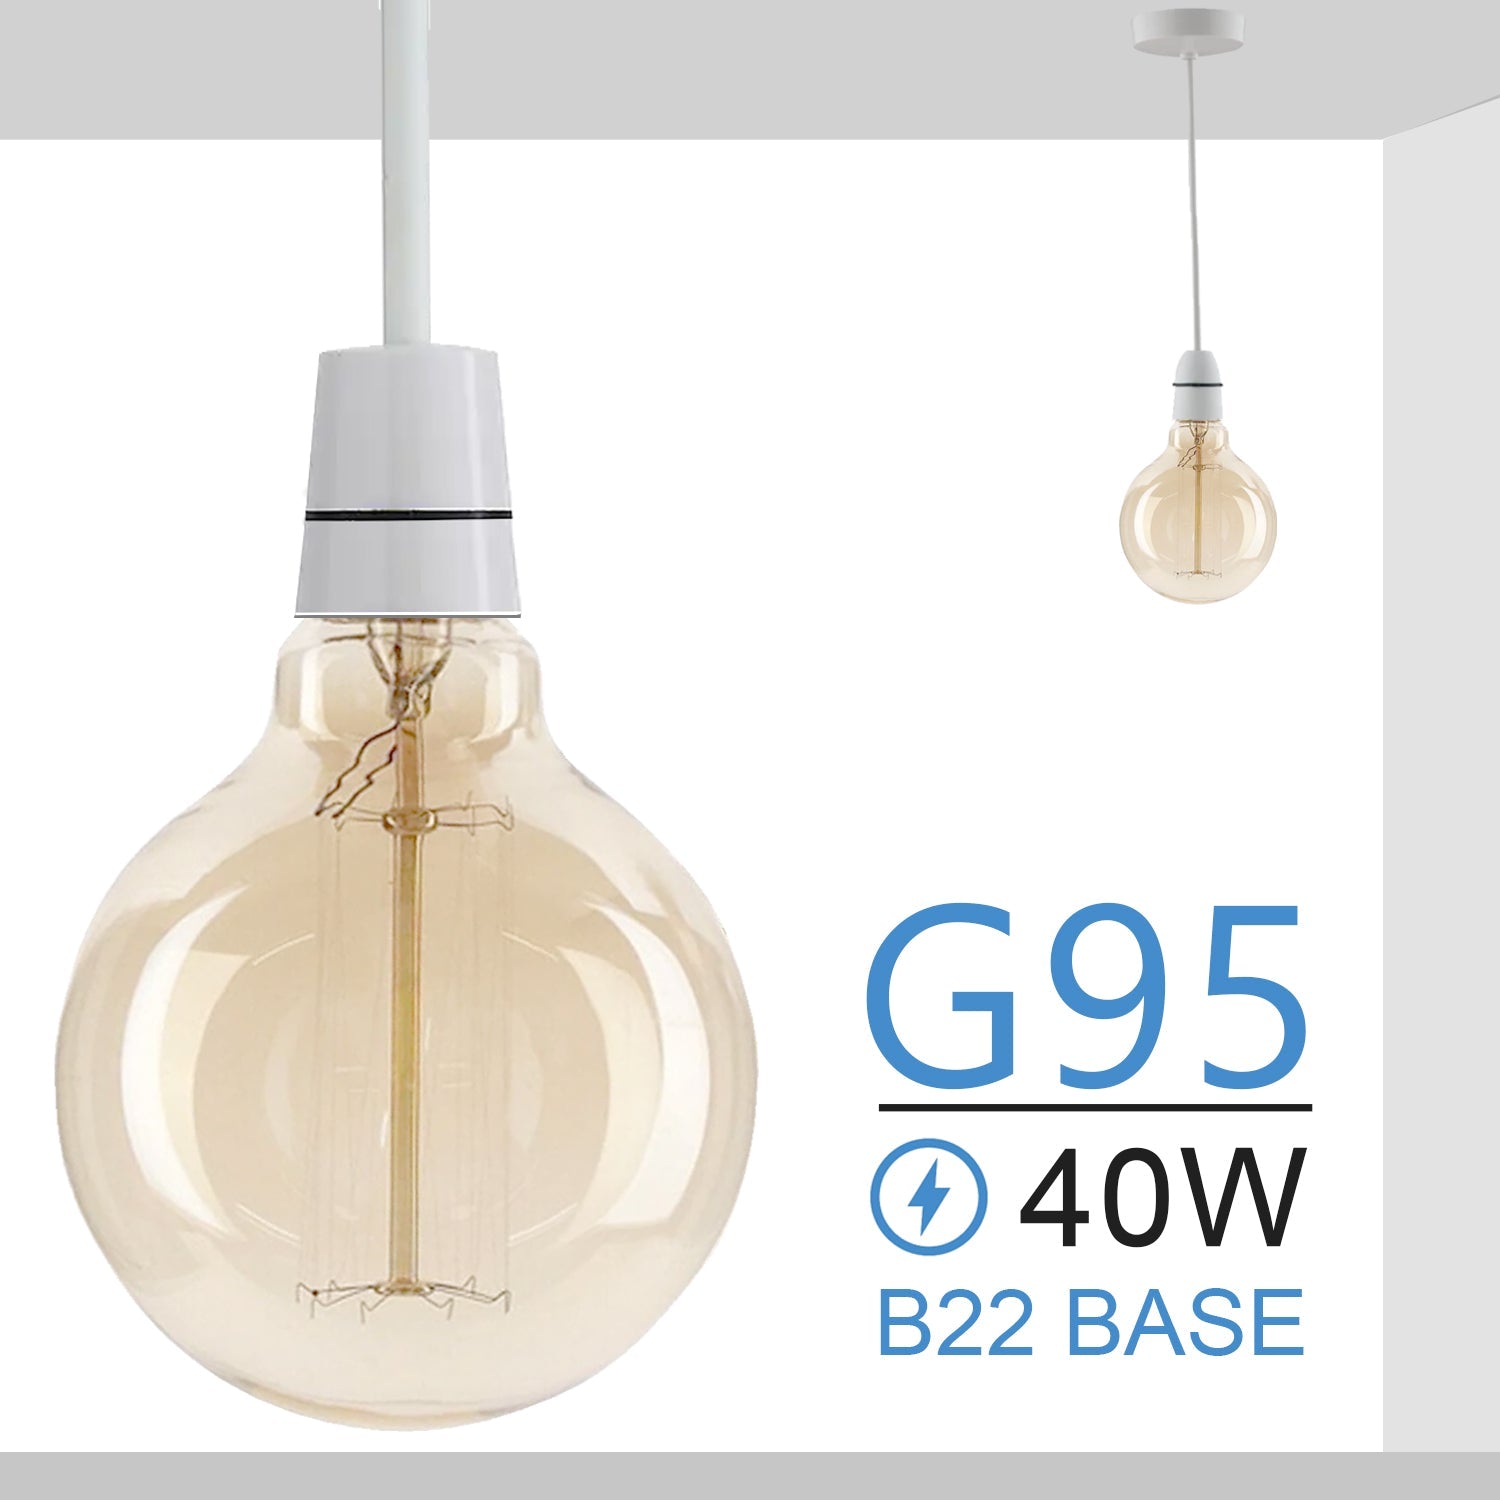 B22 Bulb